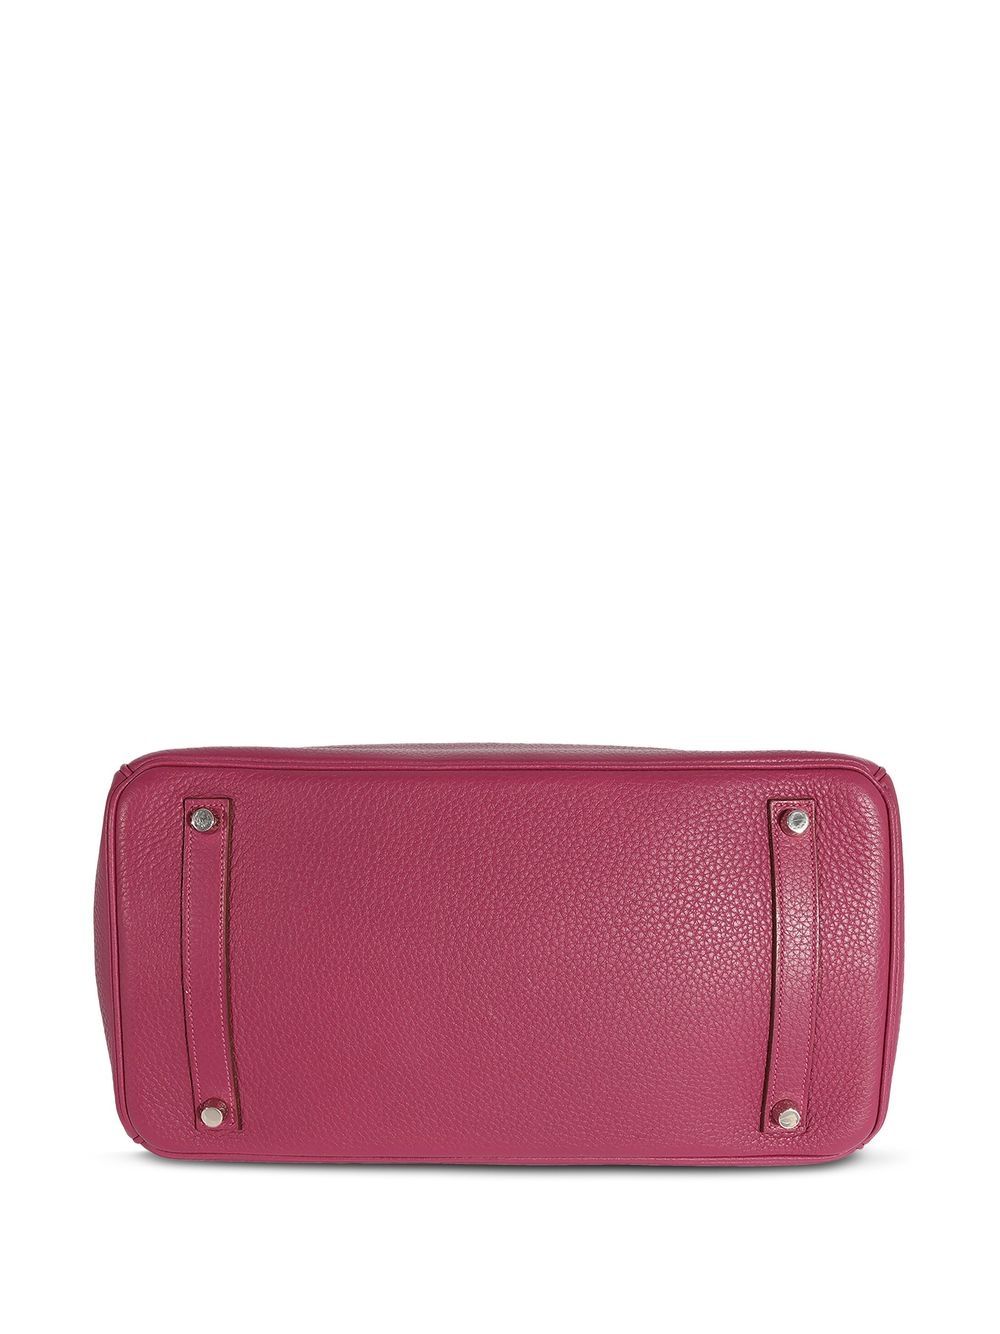 Hermès Pre-owned Birkin 35 Bag - Pink